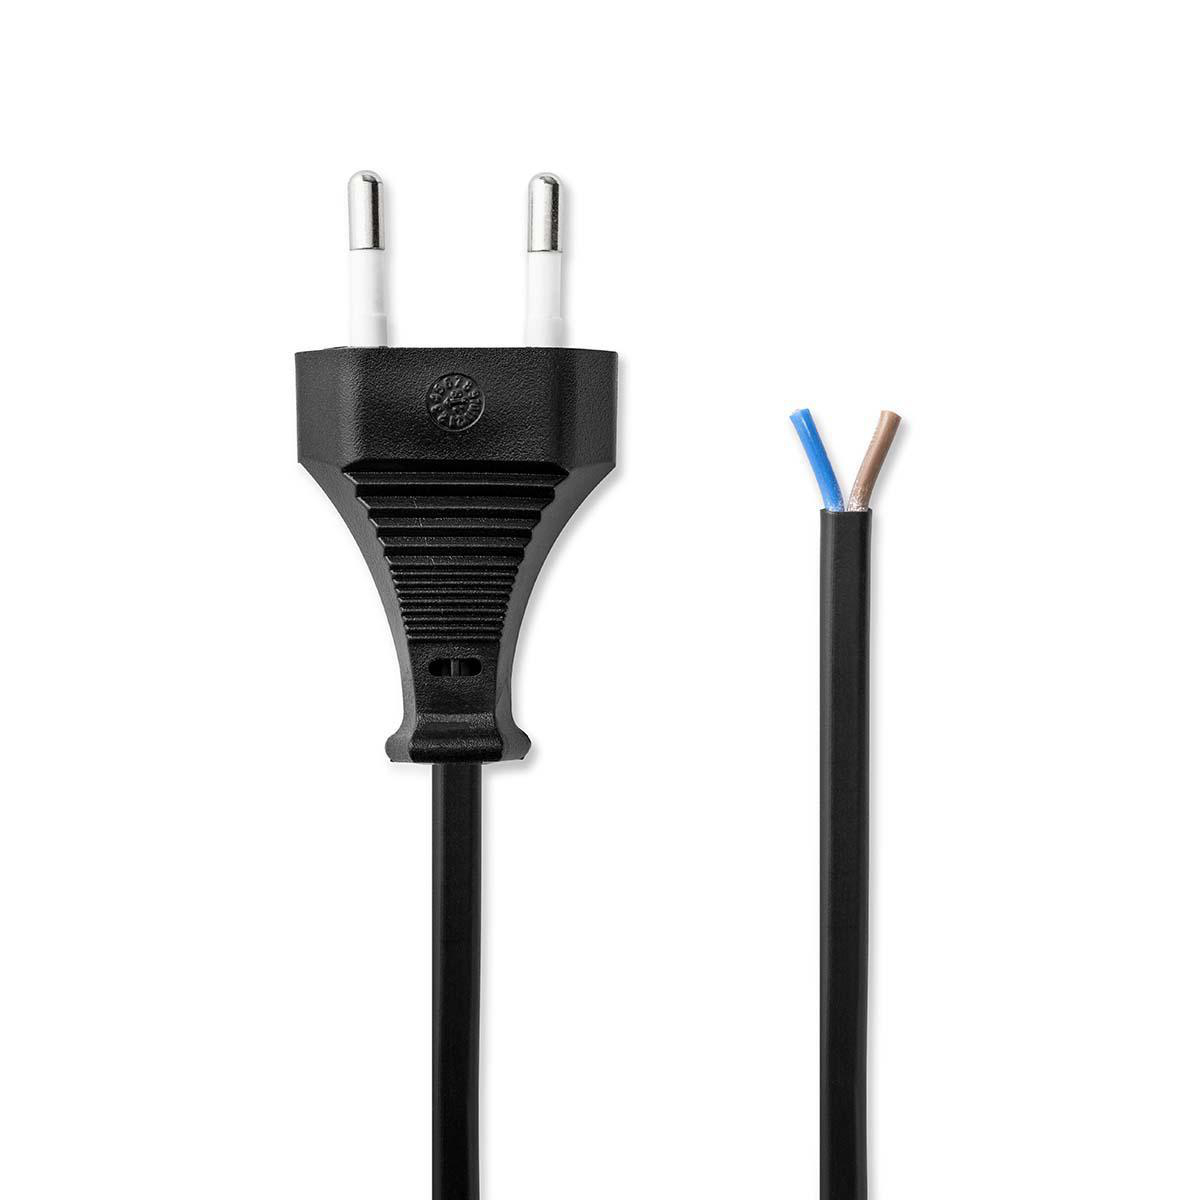 Napájecí flexo Euro kabel 2 x 0.75 mm, 2 m, černá (PCGP11700BK20)